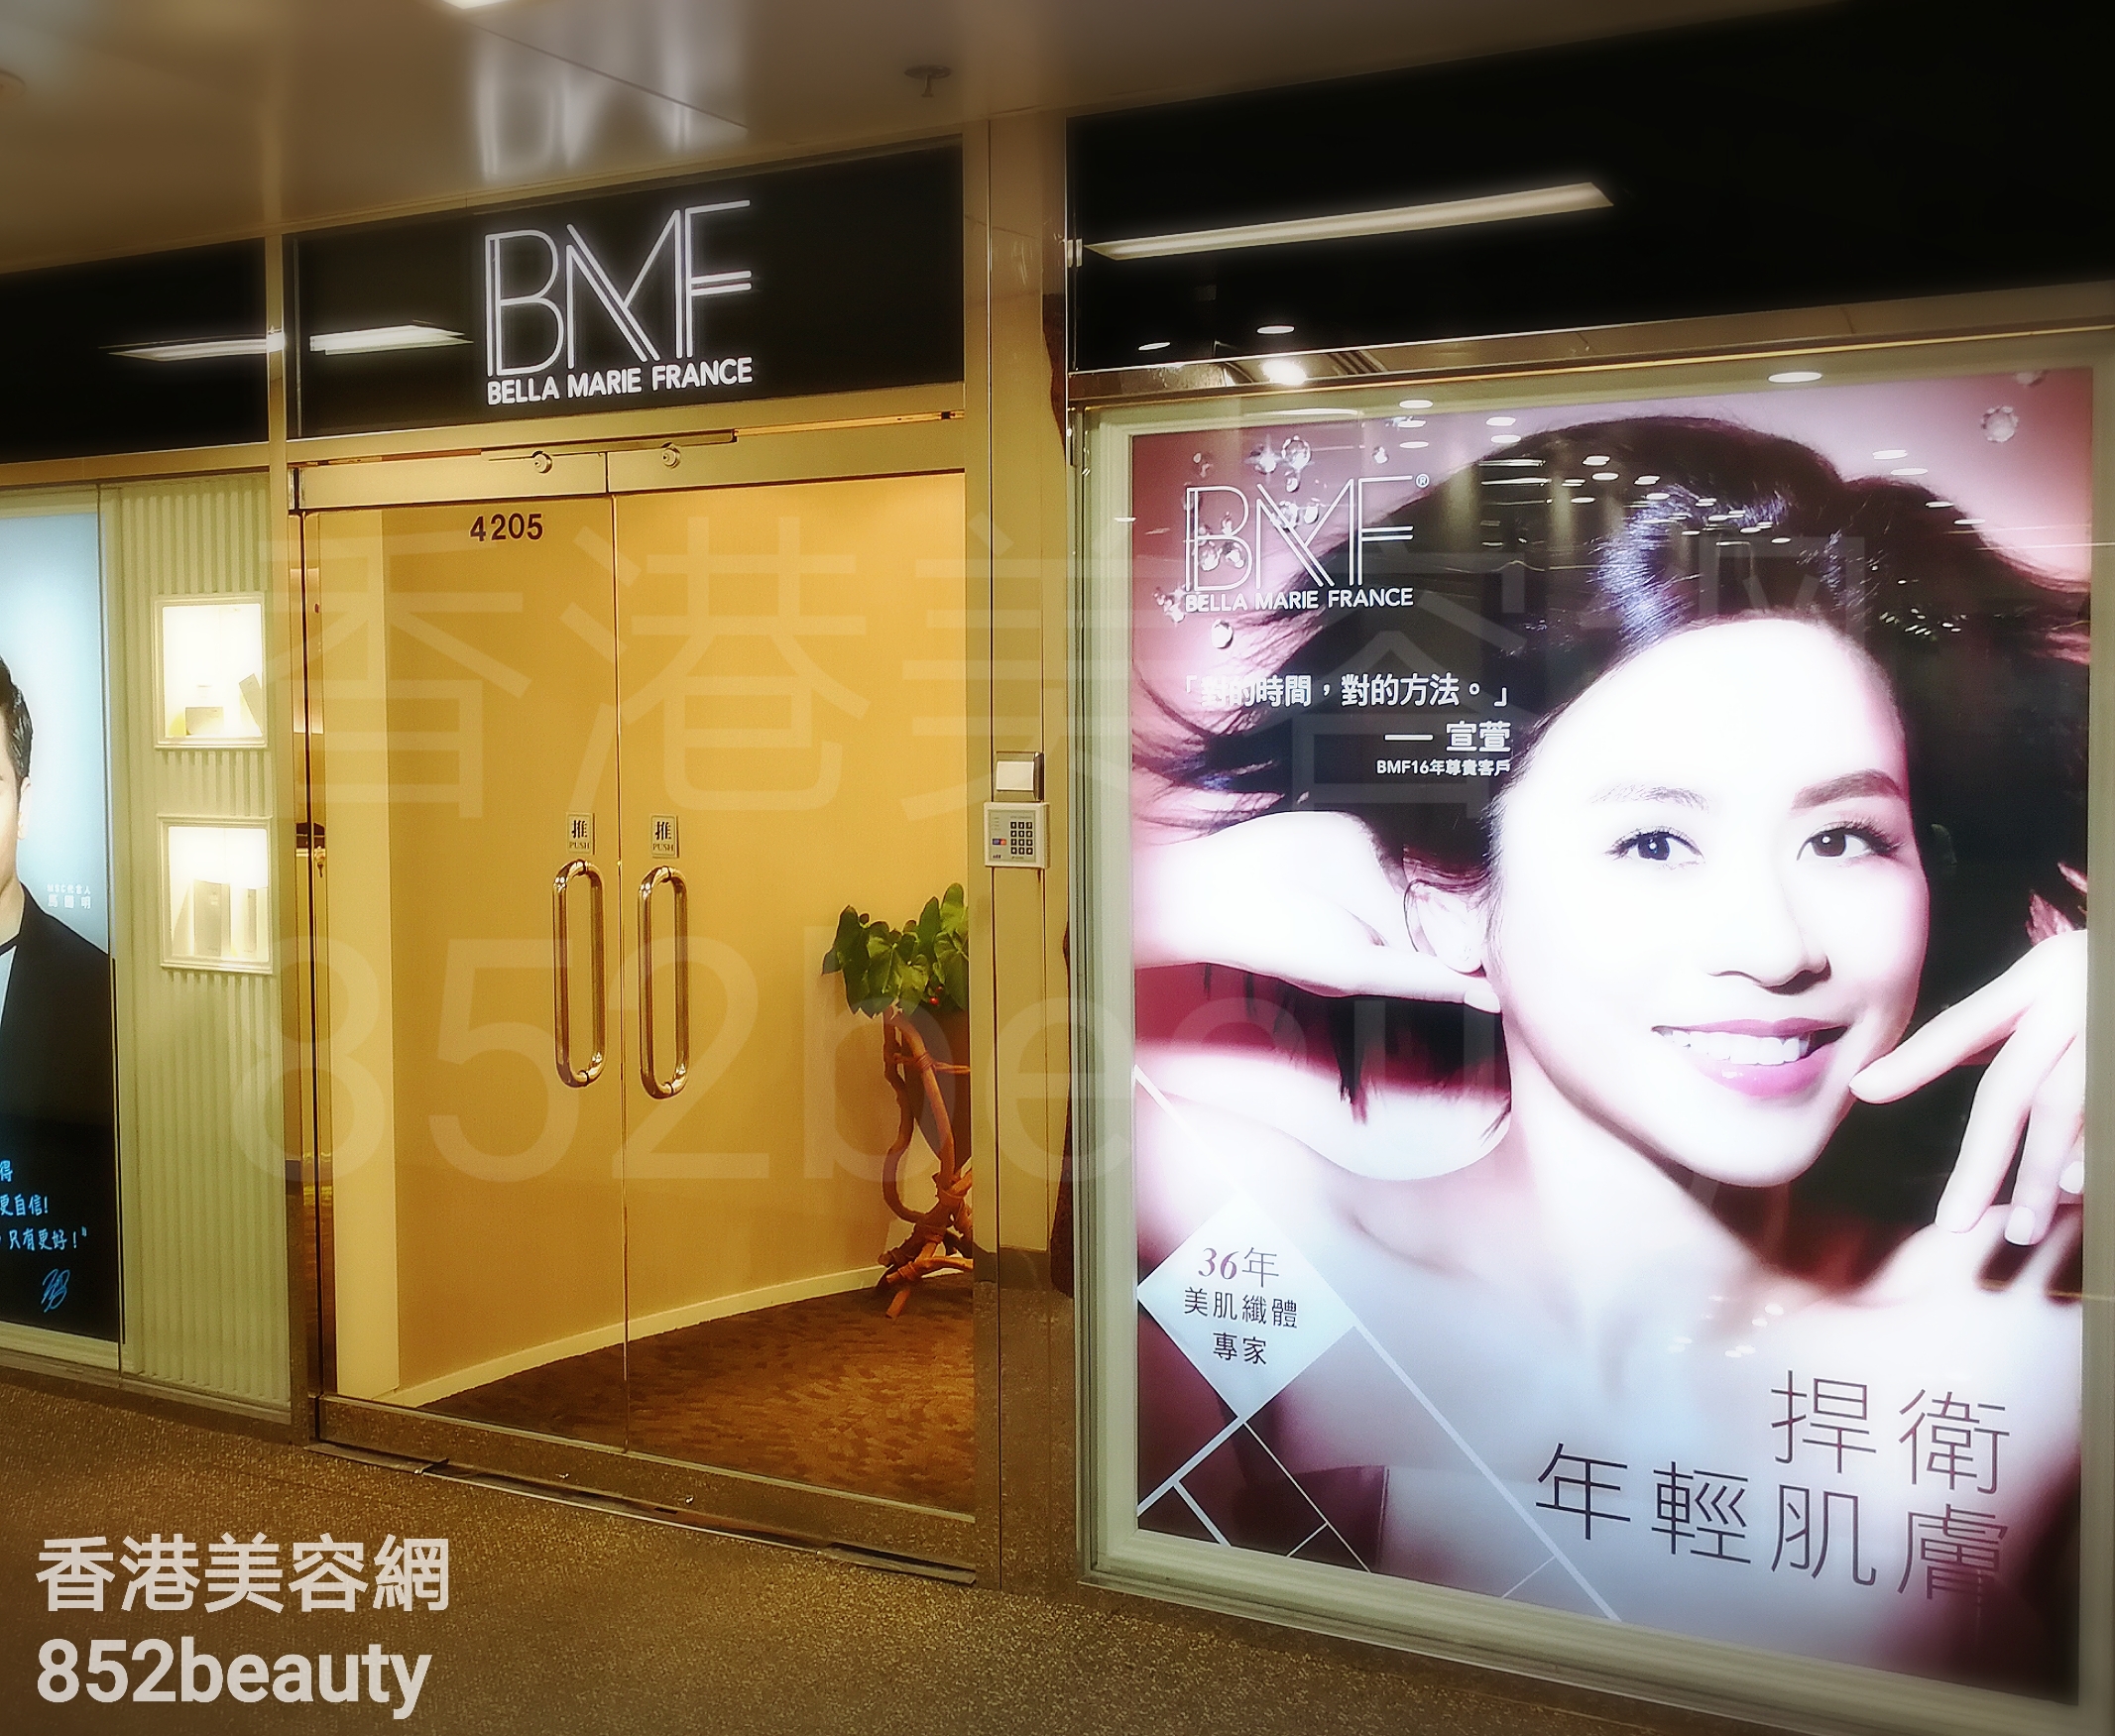 香港美容網 Hong Kong Beauty Salon 美容院 / 美容師: BMF (葵芳店)